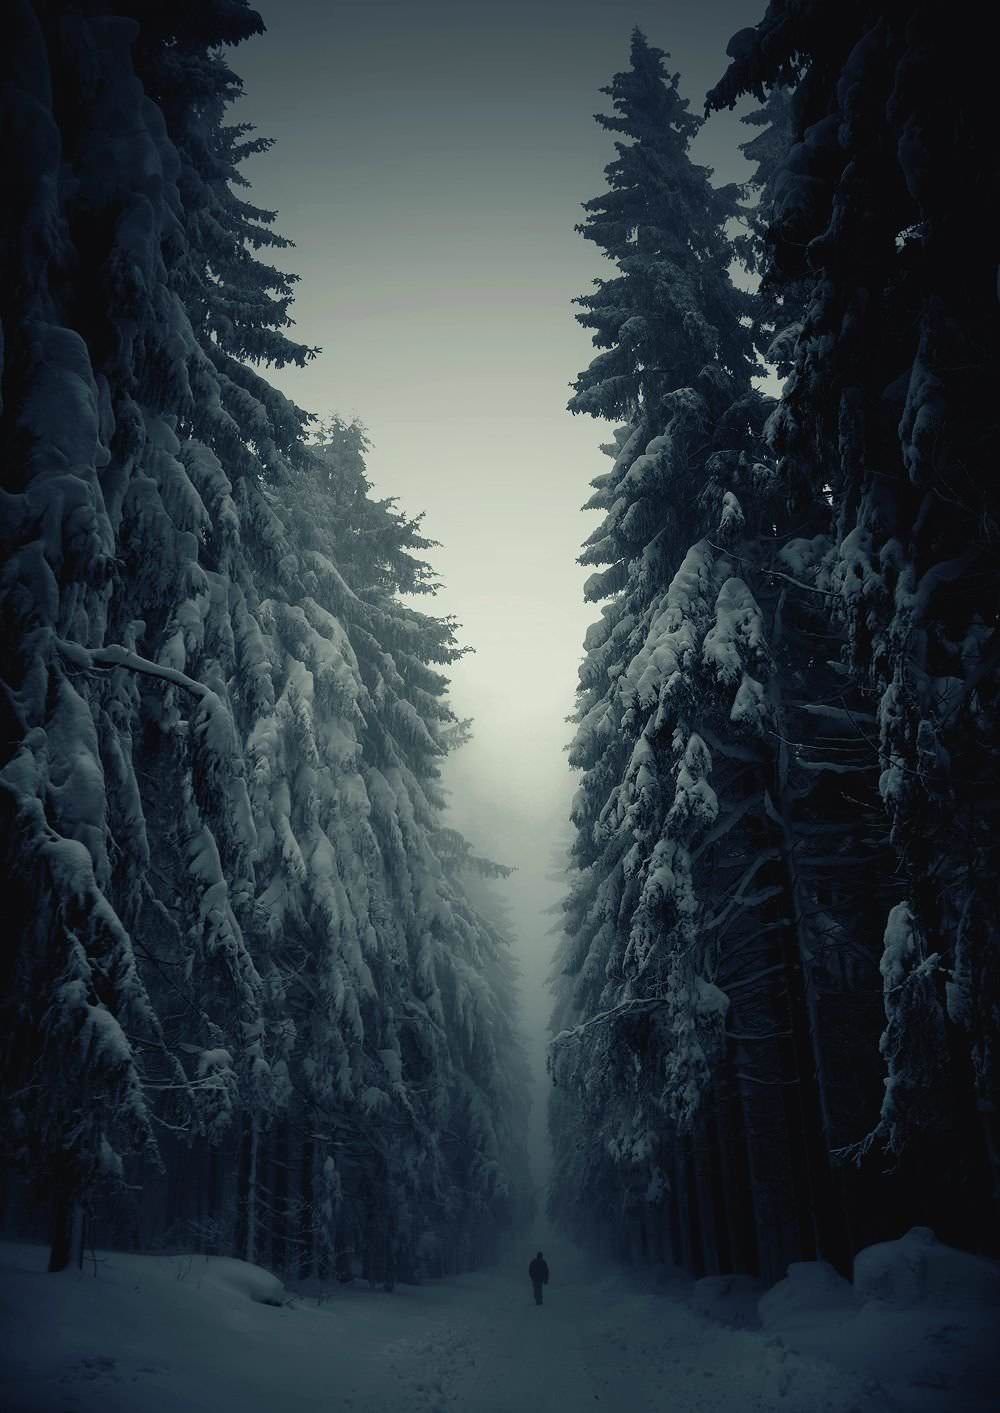 手机壁纸-雪地和树林